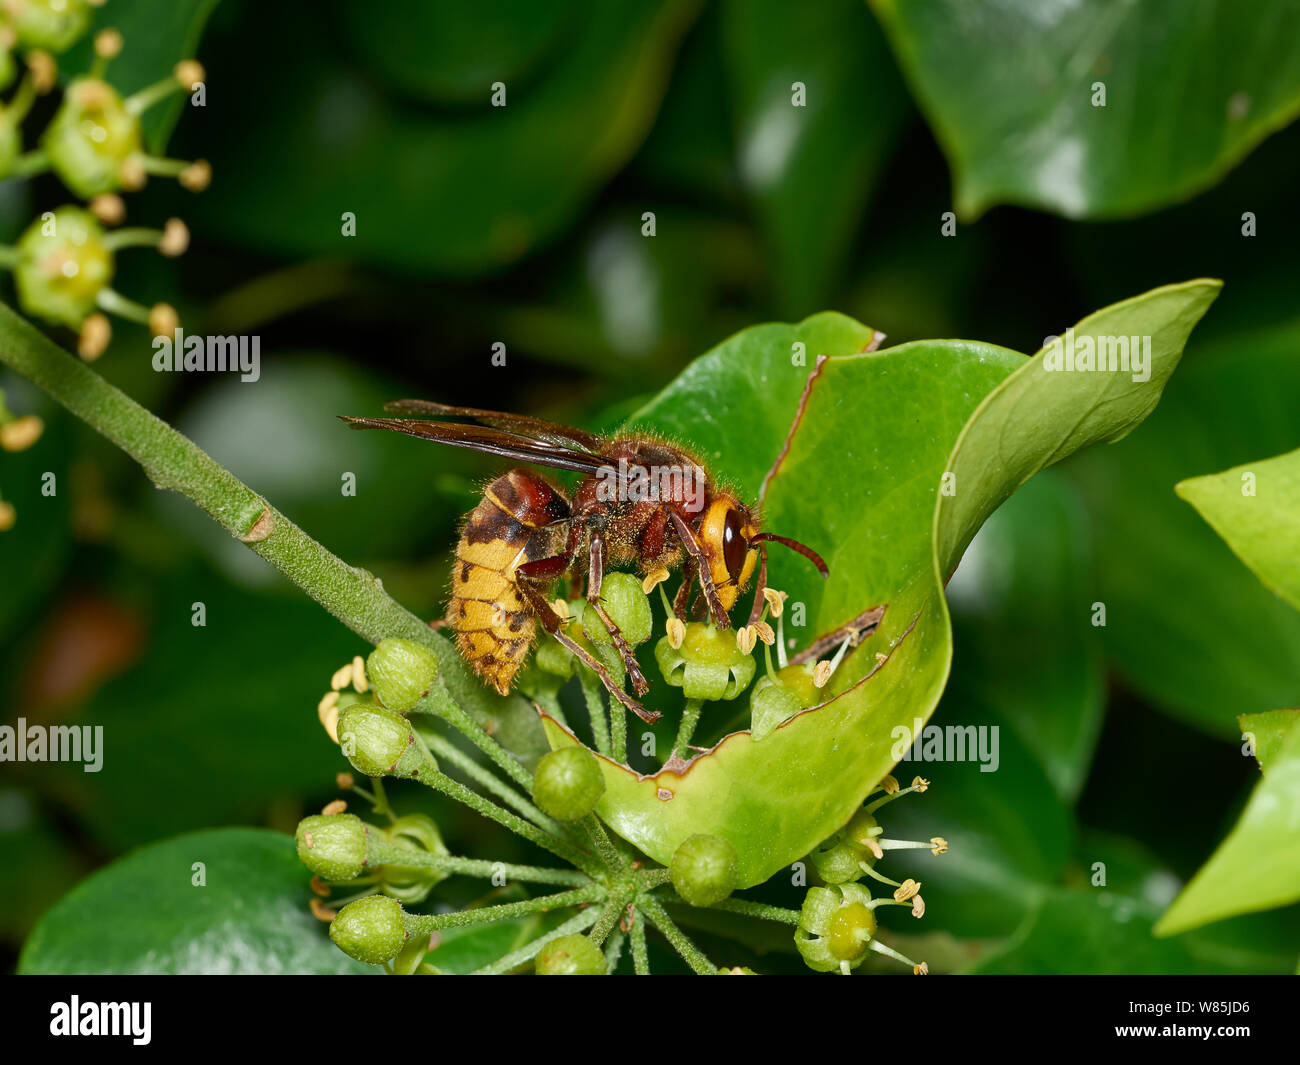 Frelon (Vespa crabro) se nourrissent de nectar de fleurs de lierre. Sussex, Angleterre, Royaume-Uni. Octobre. Banque D'Images